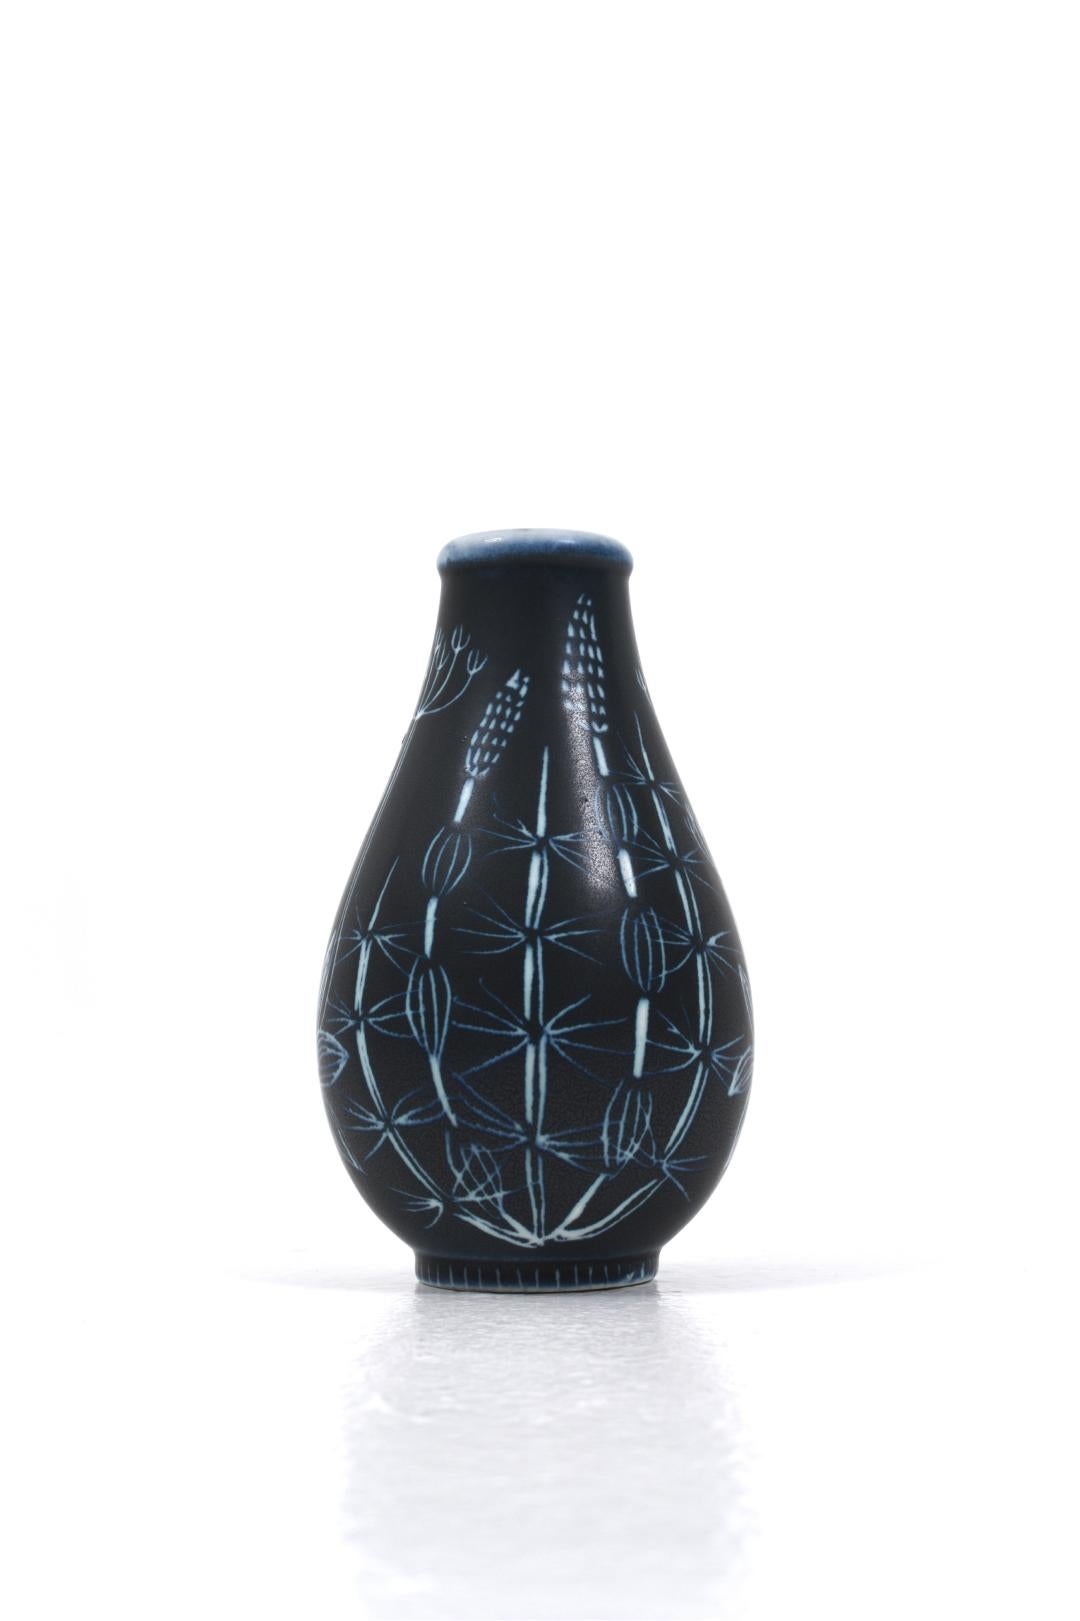 Ceramic vase by Hertha Bengtsson for Rörstrand In Good Condition For Sale In Göteborg, SE